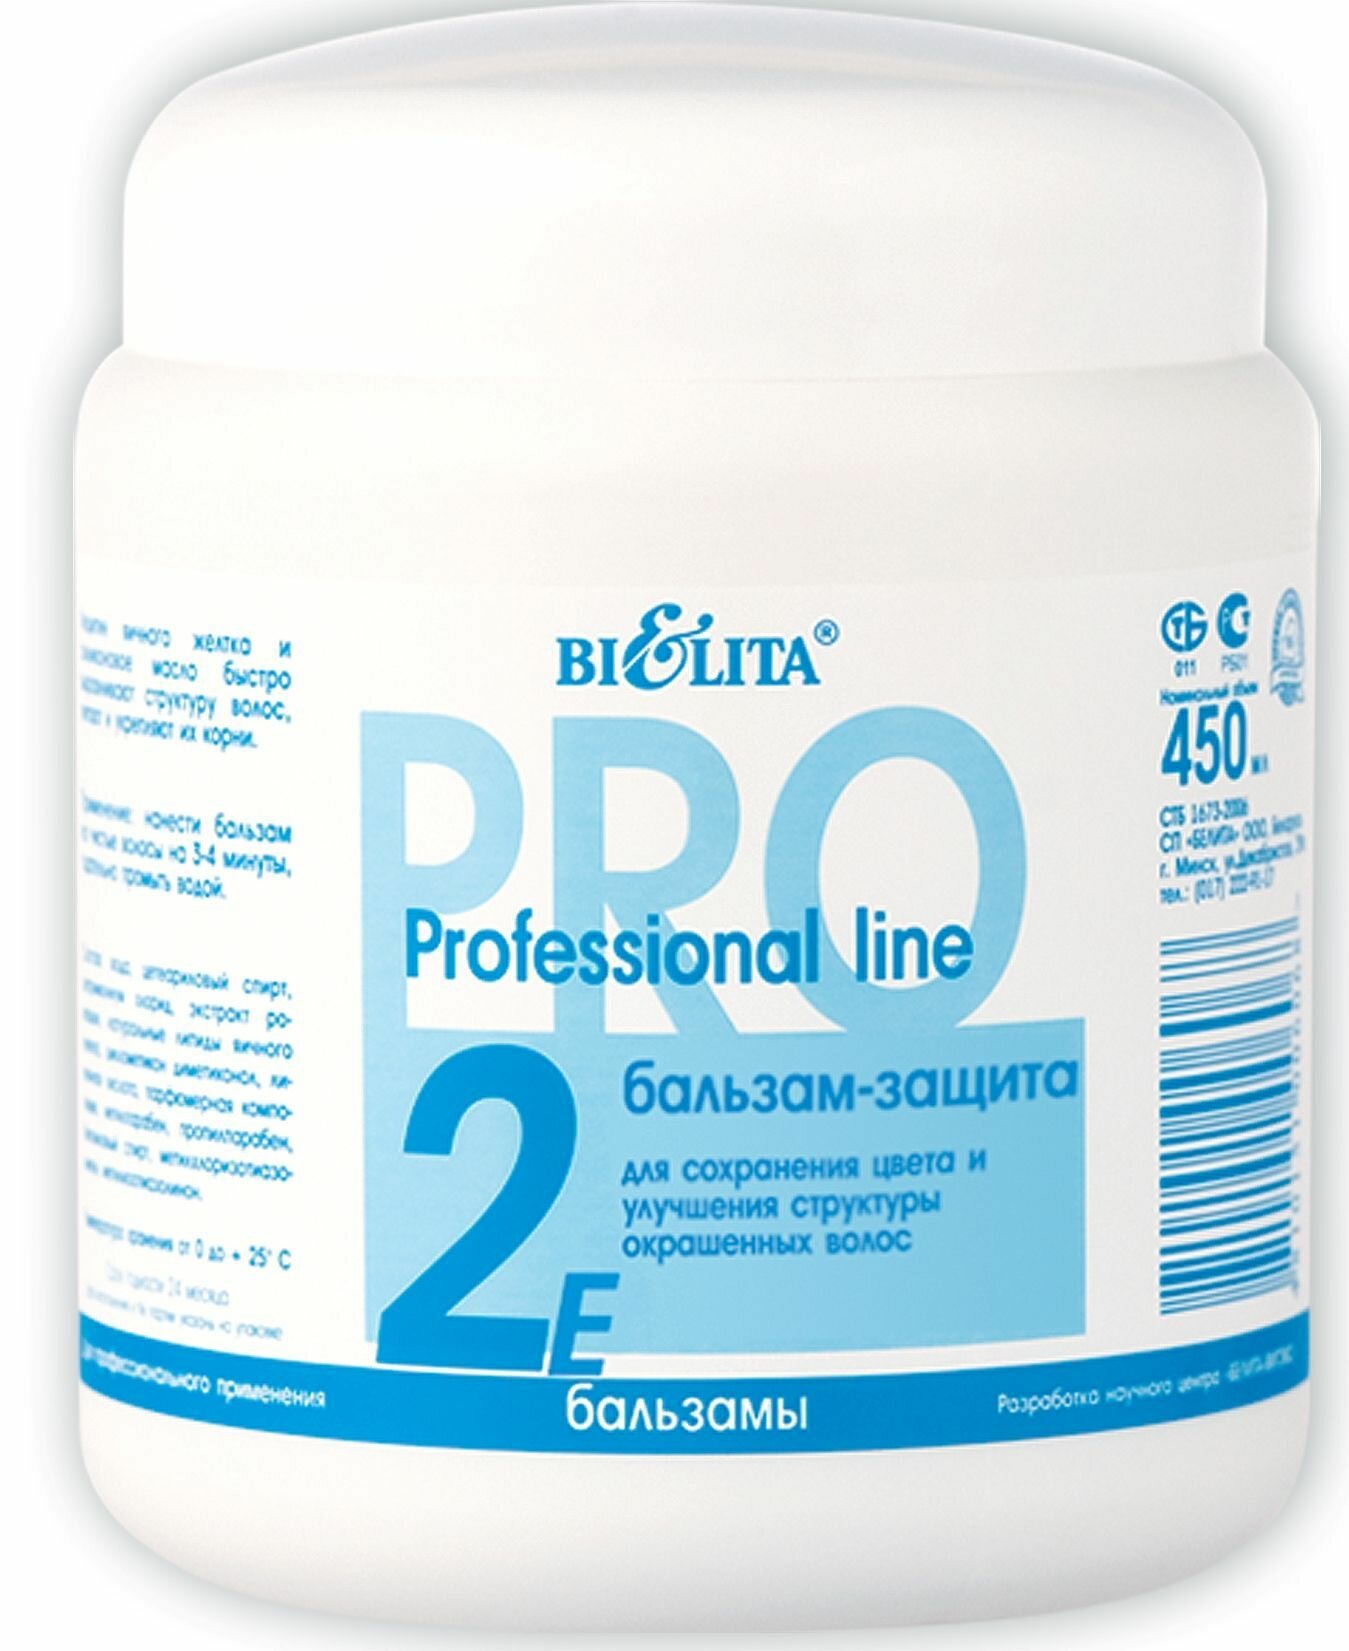 Белита Бальзам-защита Professional line для сохранения цвета и улучшения структуры окрашенных волос, 450 мл